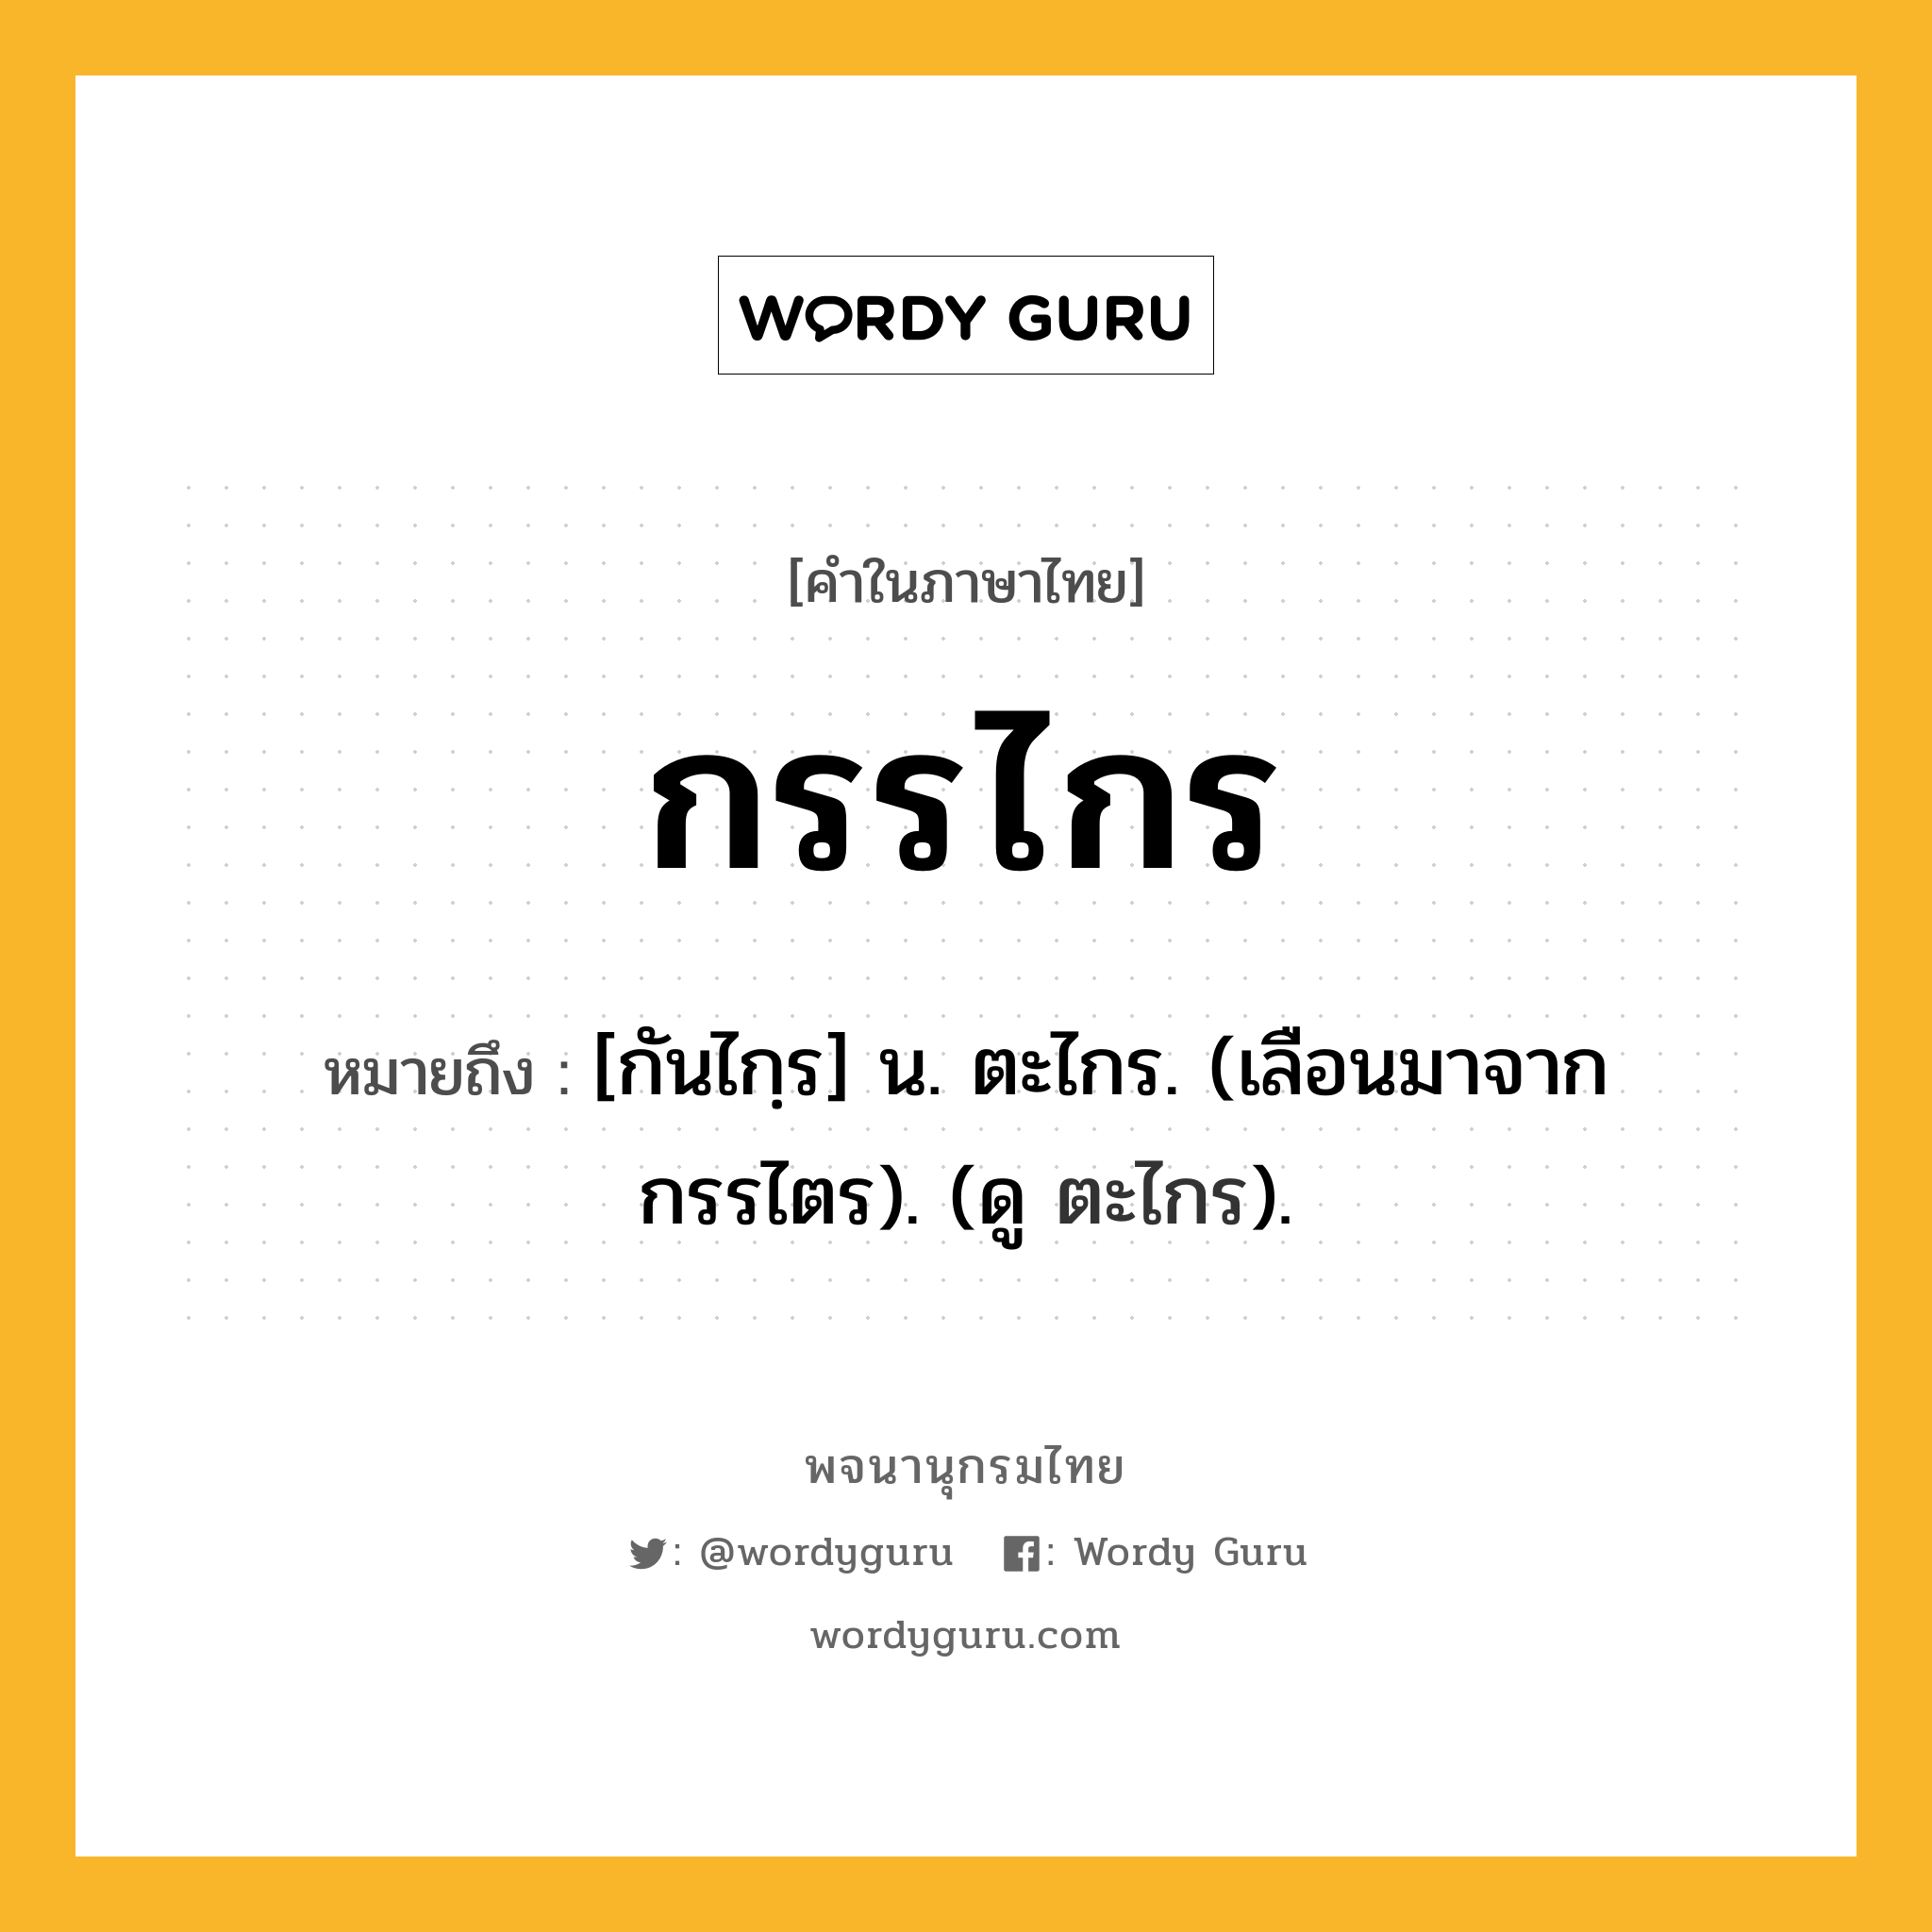 กรรไกร ความหมาย หมายถึงอะไร?, คำในภาษาไทย กรรไกร หมายถึง [กันไกฺร] น. ตะไกร. (เลือนมาจาก กรรไตร). (ดู ตะไกร).